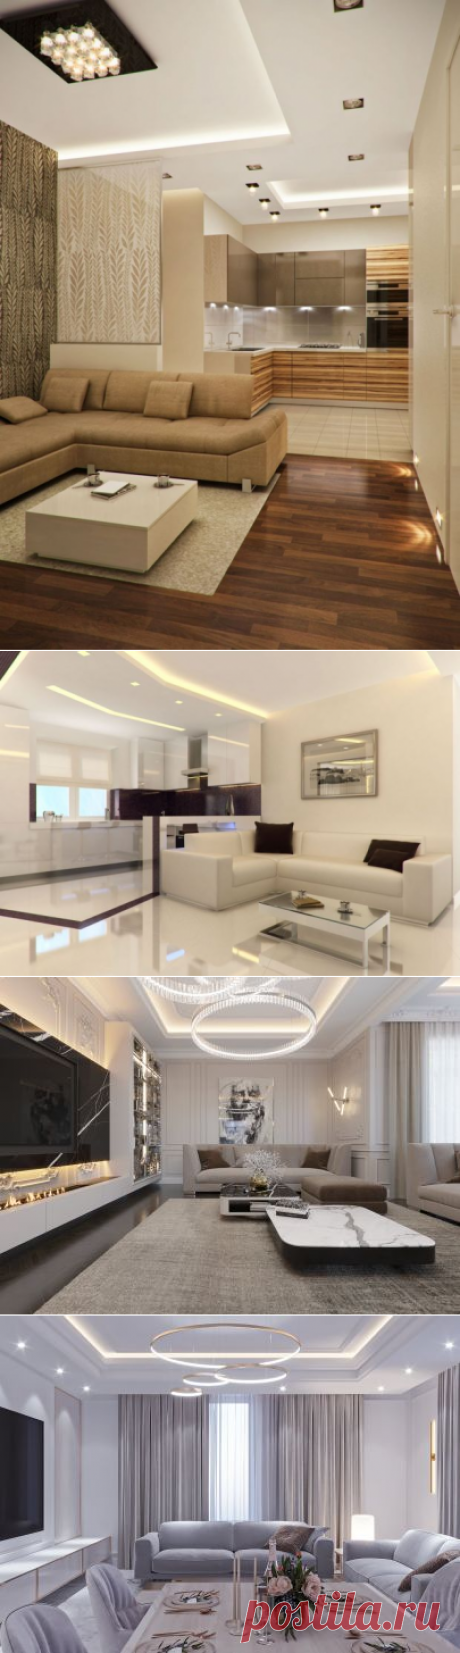 Дизайн интерьера гостиных &gt; 600 фото ❤️ Готовый дизайн гостиной в квартирах и загородных домах